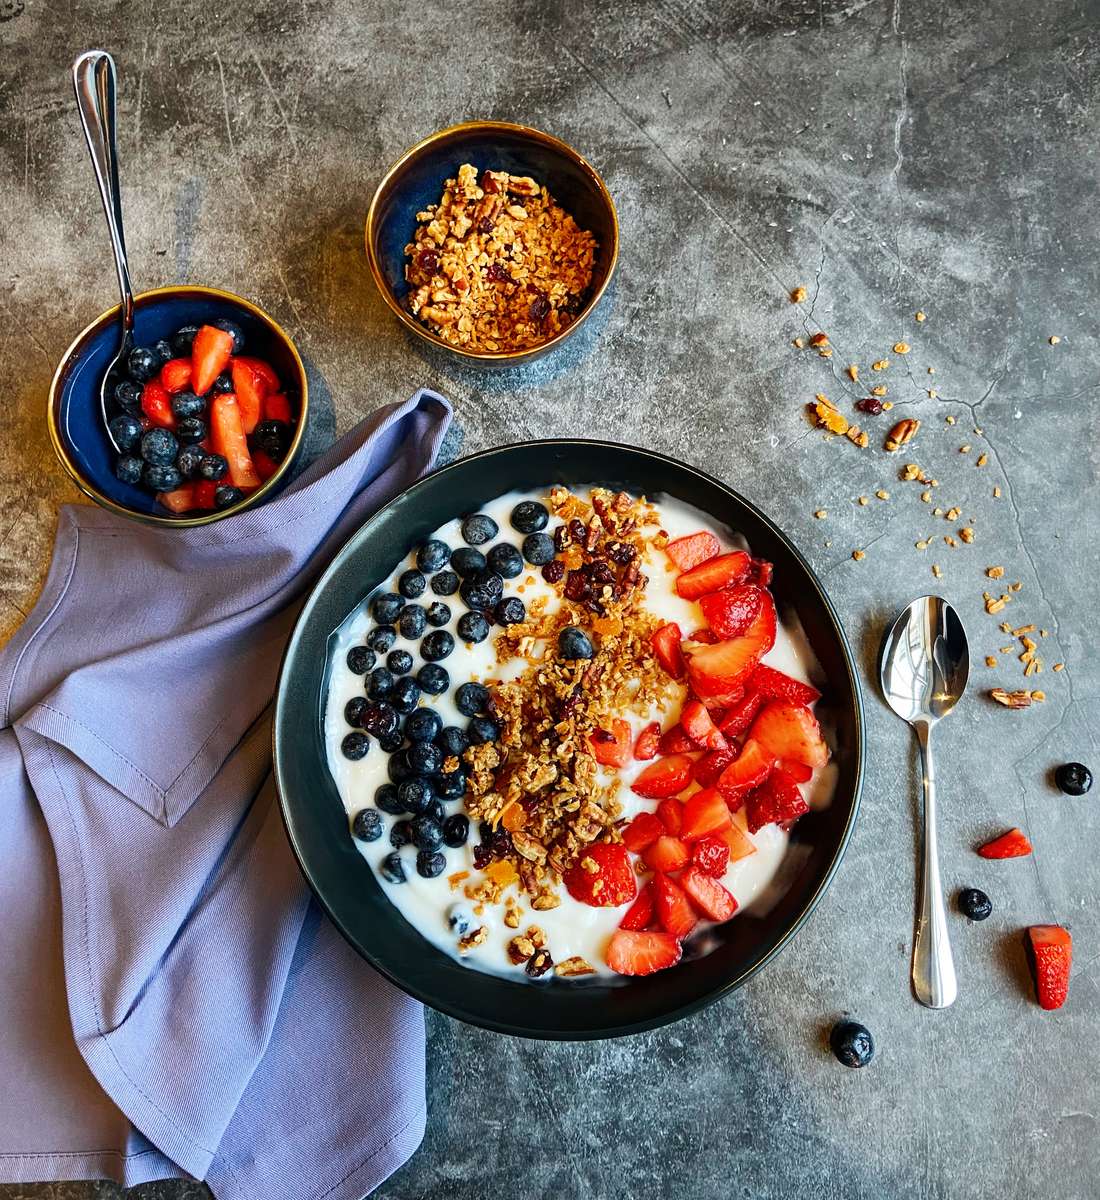 Yogurt and Granola with berries